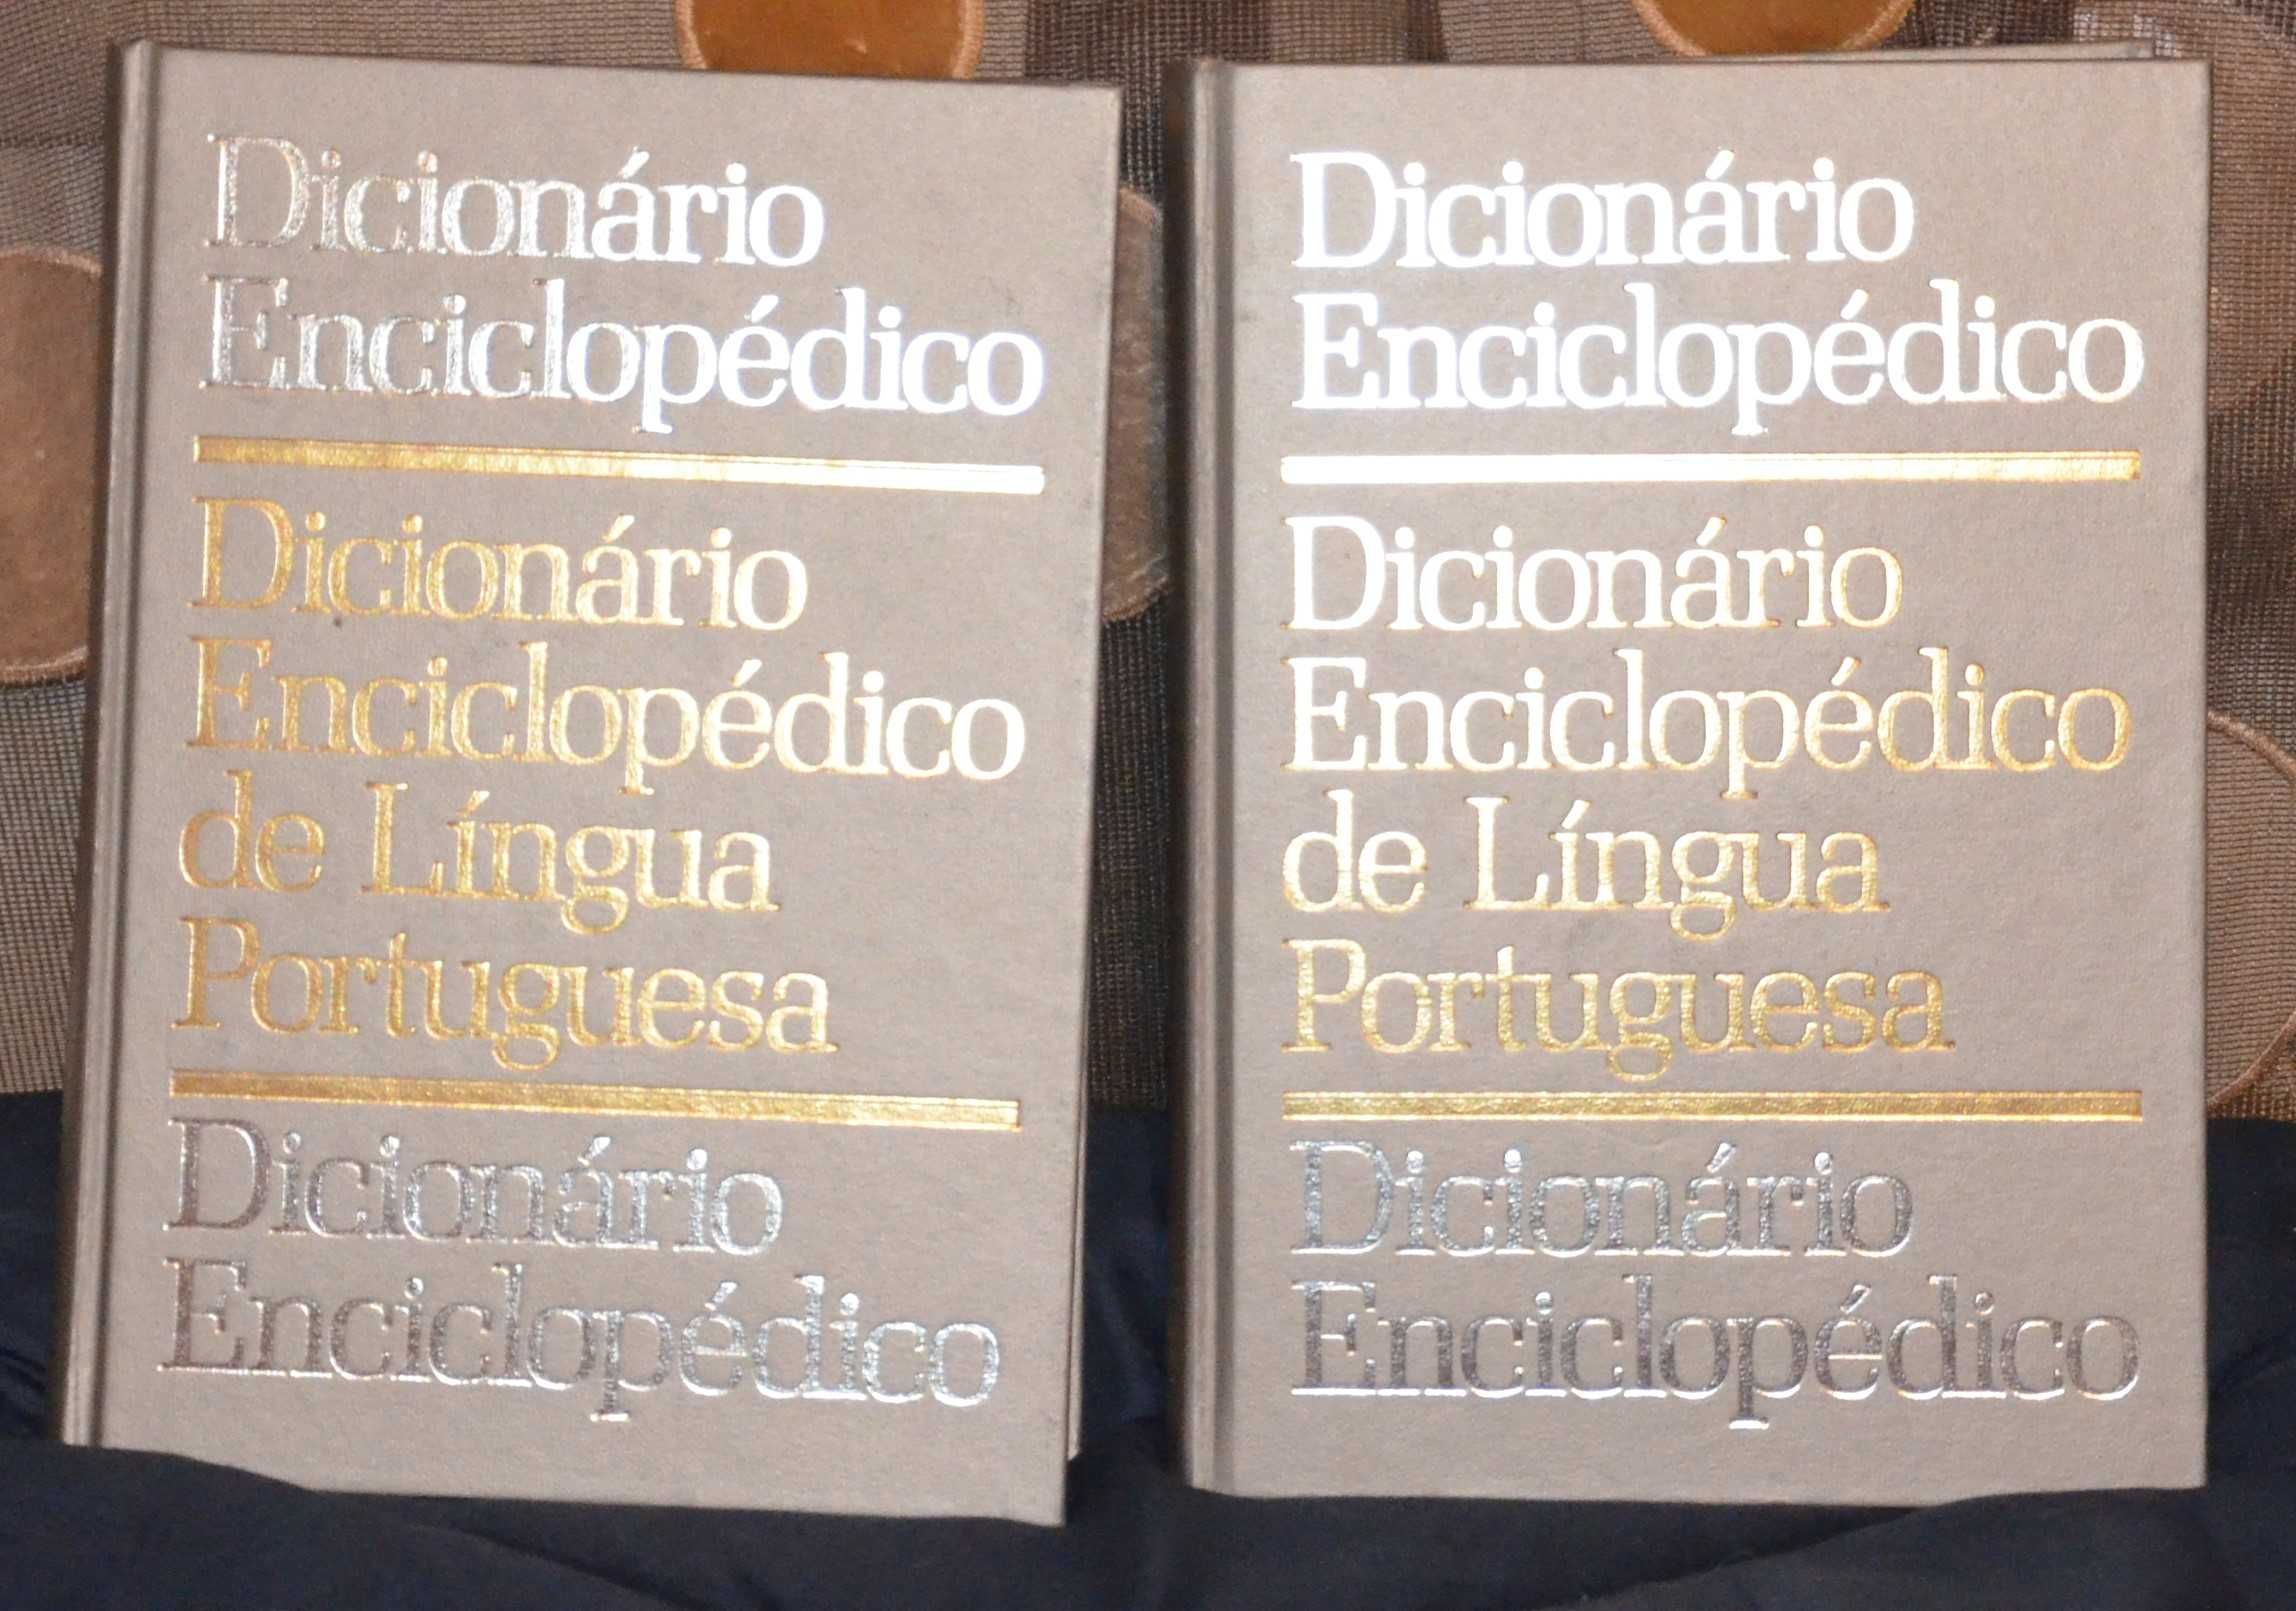 Dicionário Enciclopédico de Língua Portuguesa